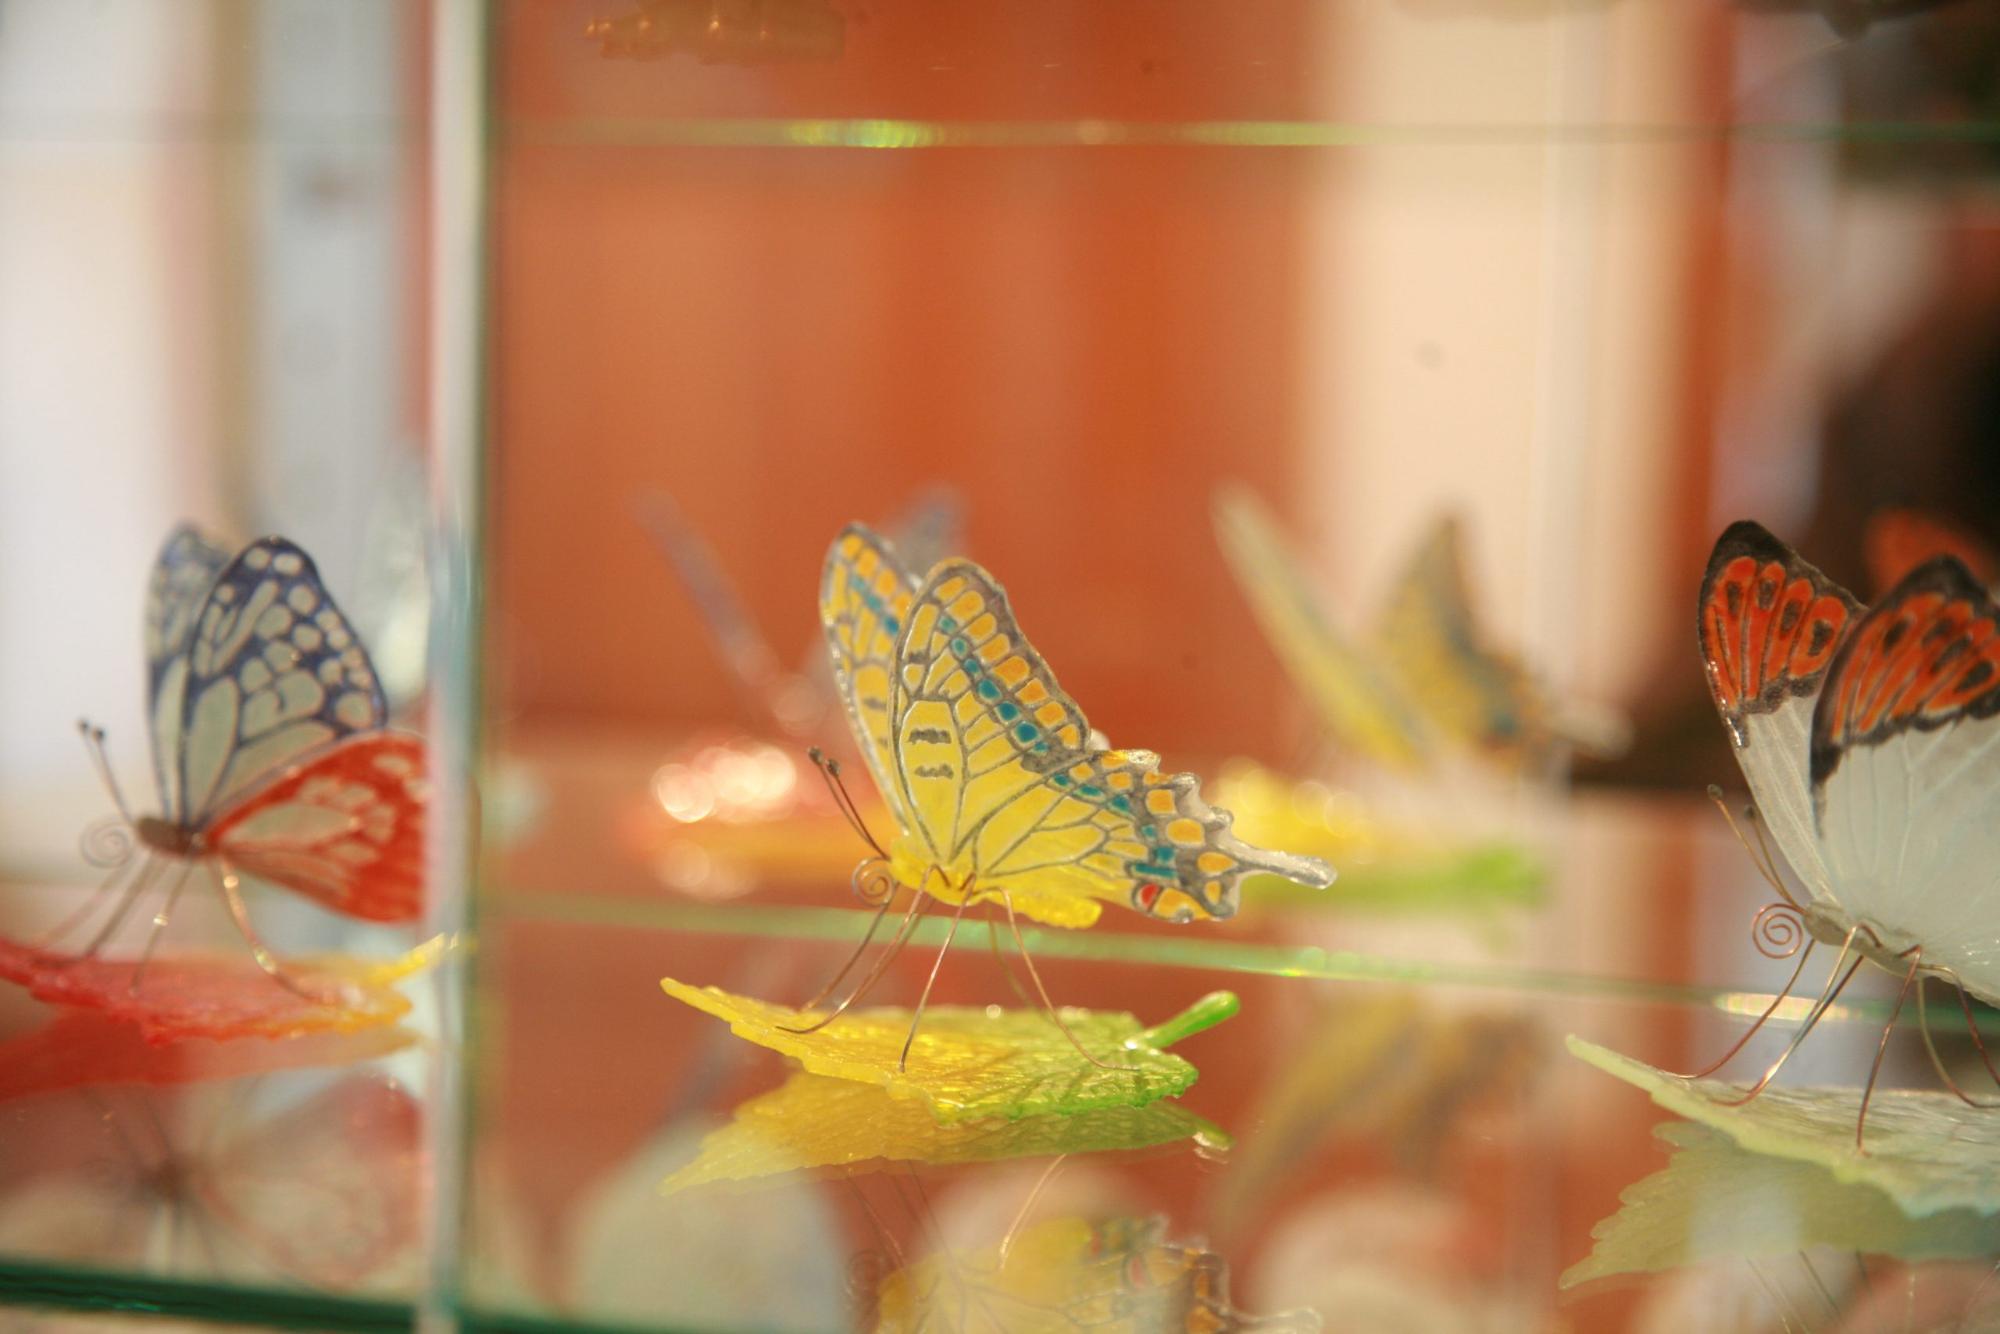 チョウが葉っぱに止まっている様子を模ったガラス細工が3つ並んでいる写真